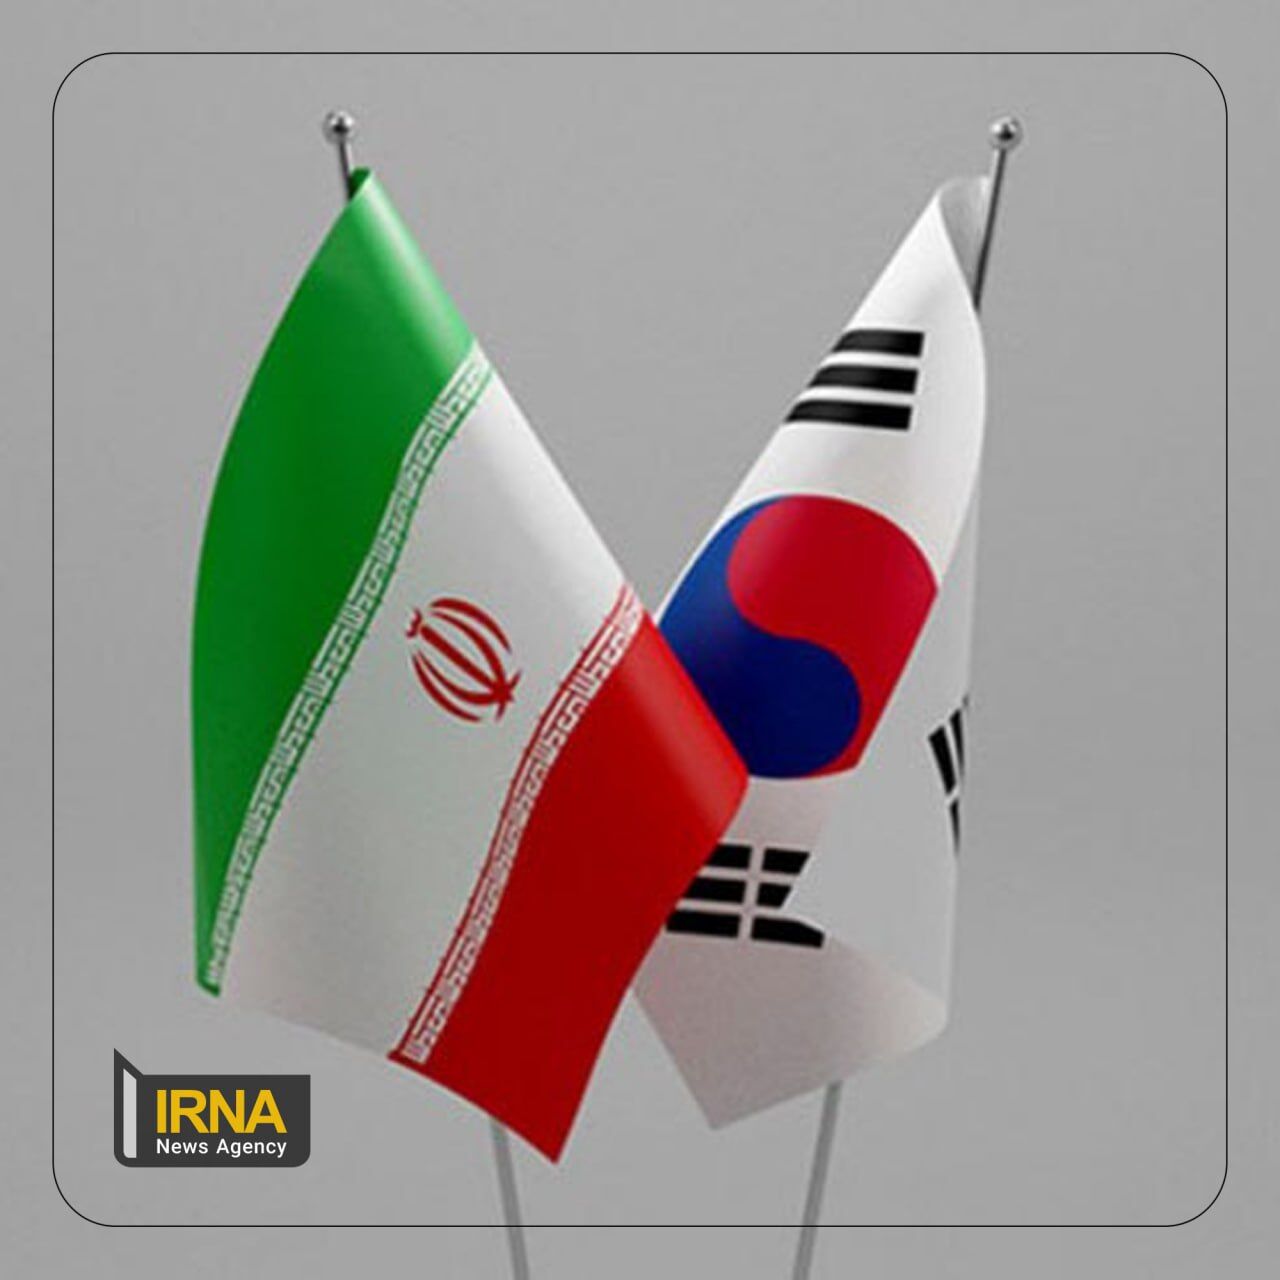 Reuters: In Südkorea blockierte iranische Gelder an eine Bank in der Schweiz überwiesen